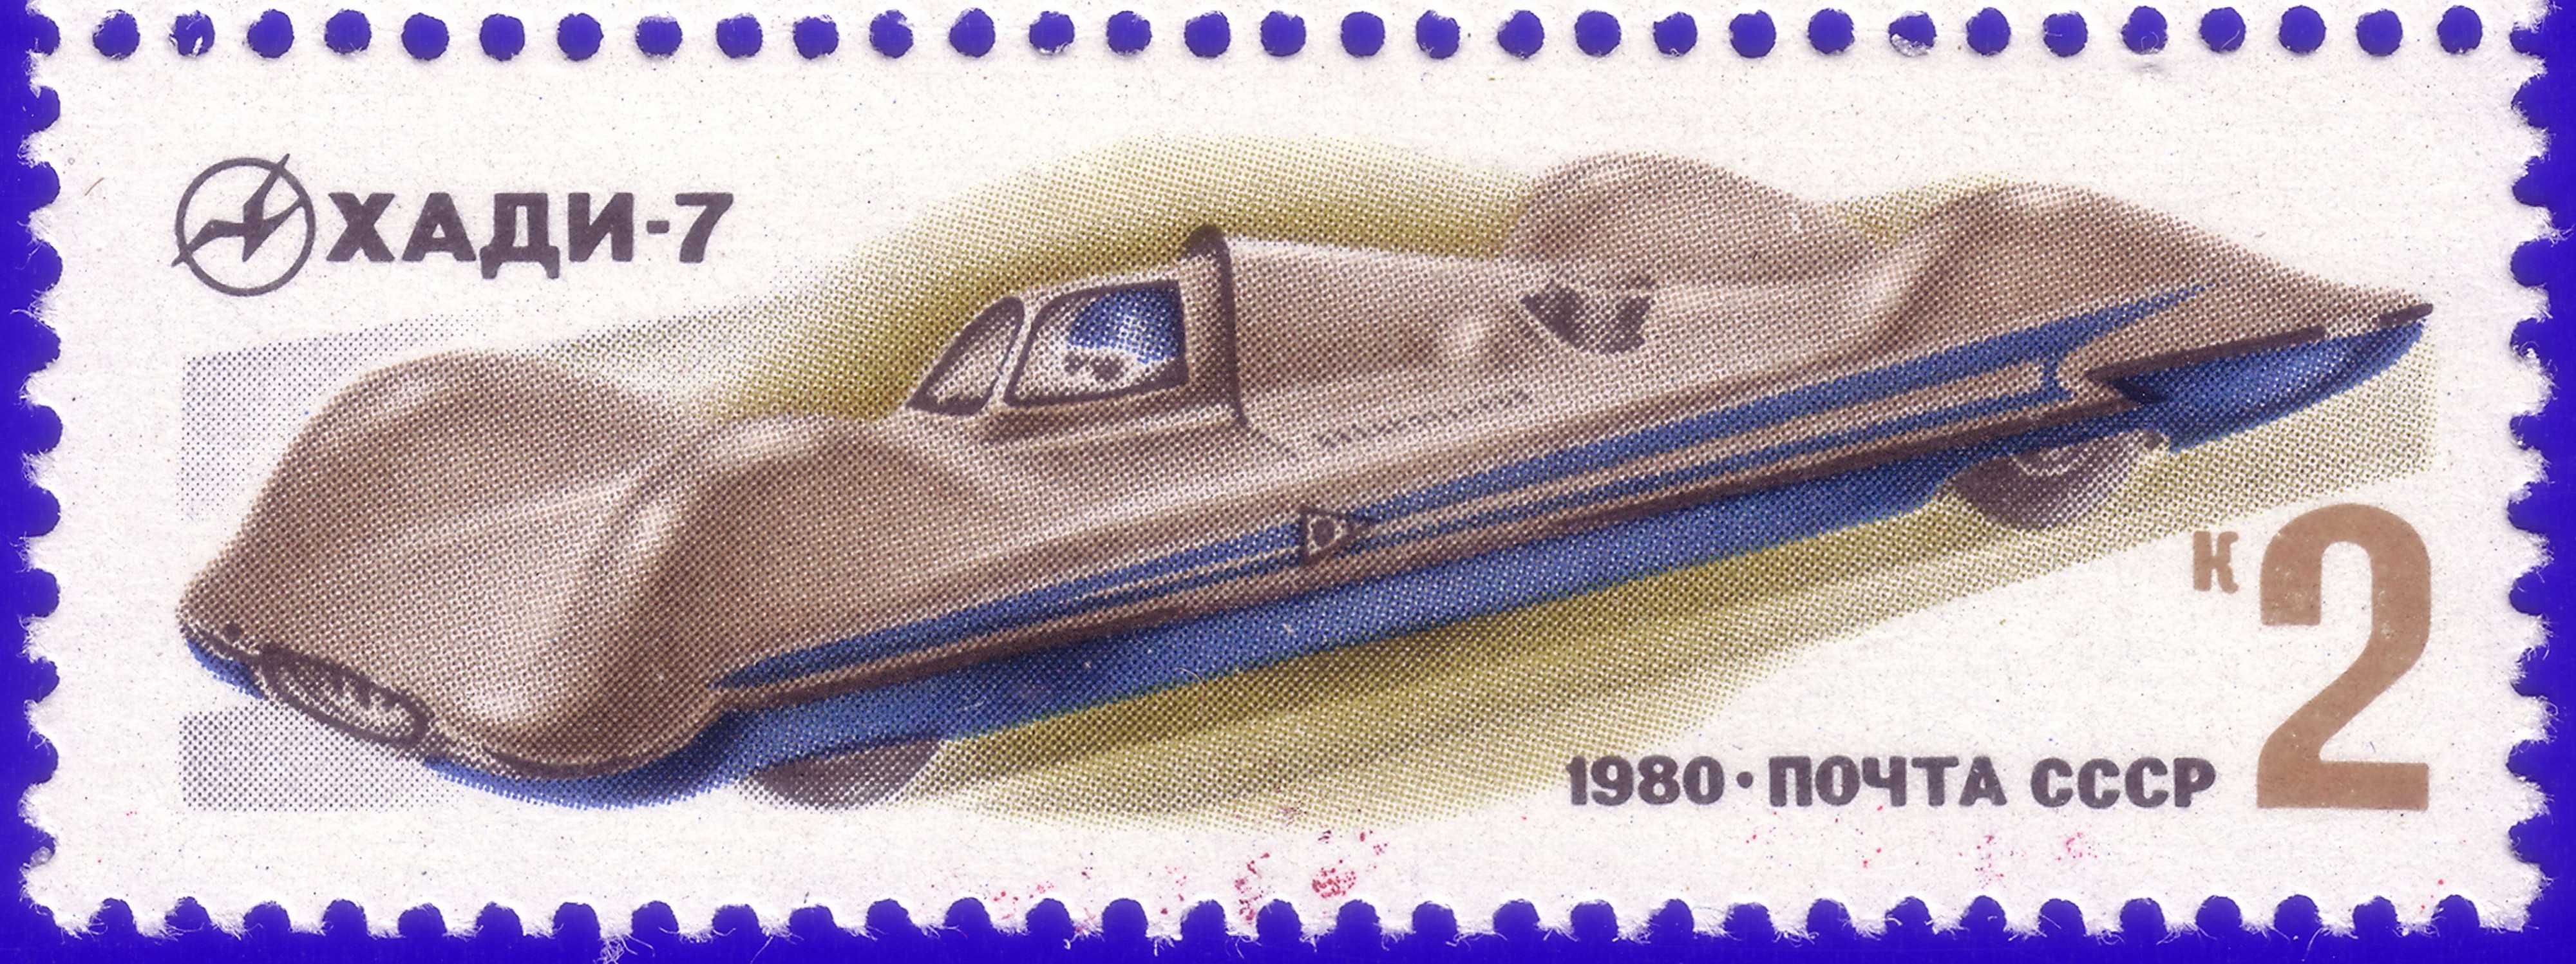 1980. Хади-7